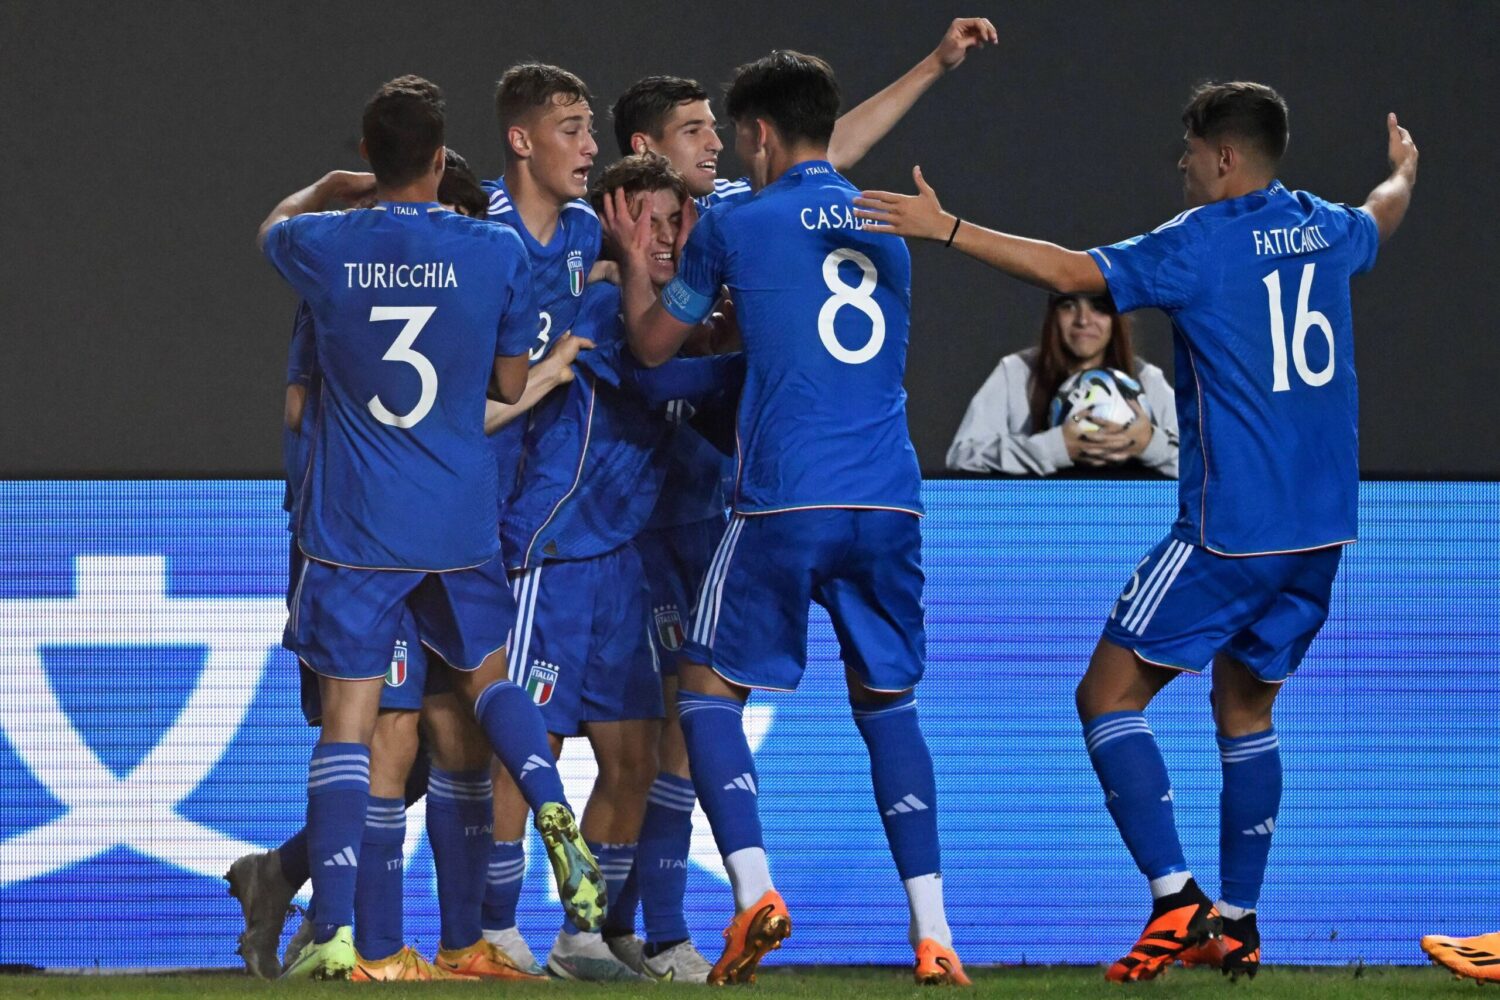 Mondiali Under 20, l'Italia è ai quarti: contro l'Inghilterra decide Casadei nel finale